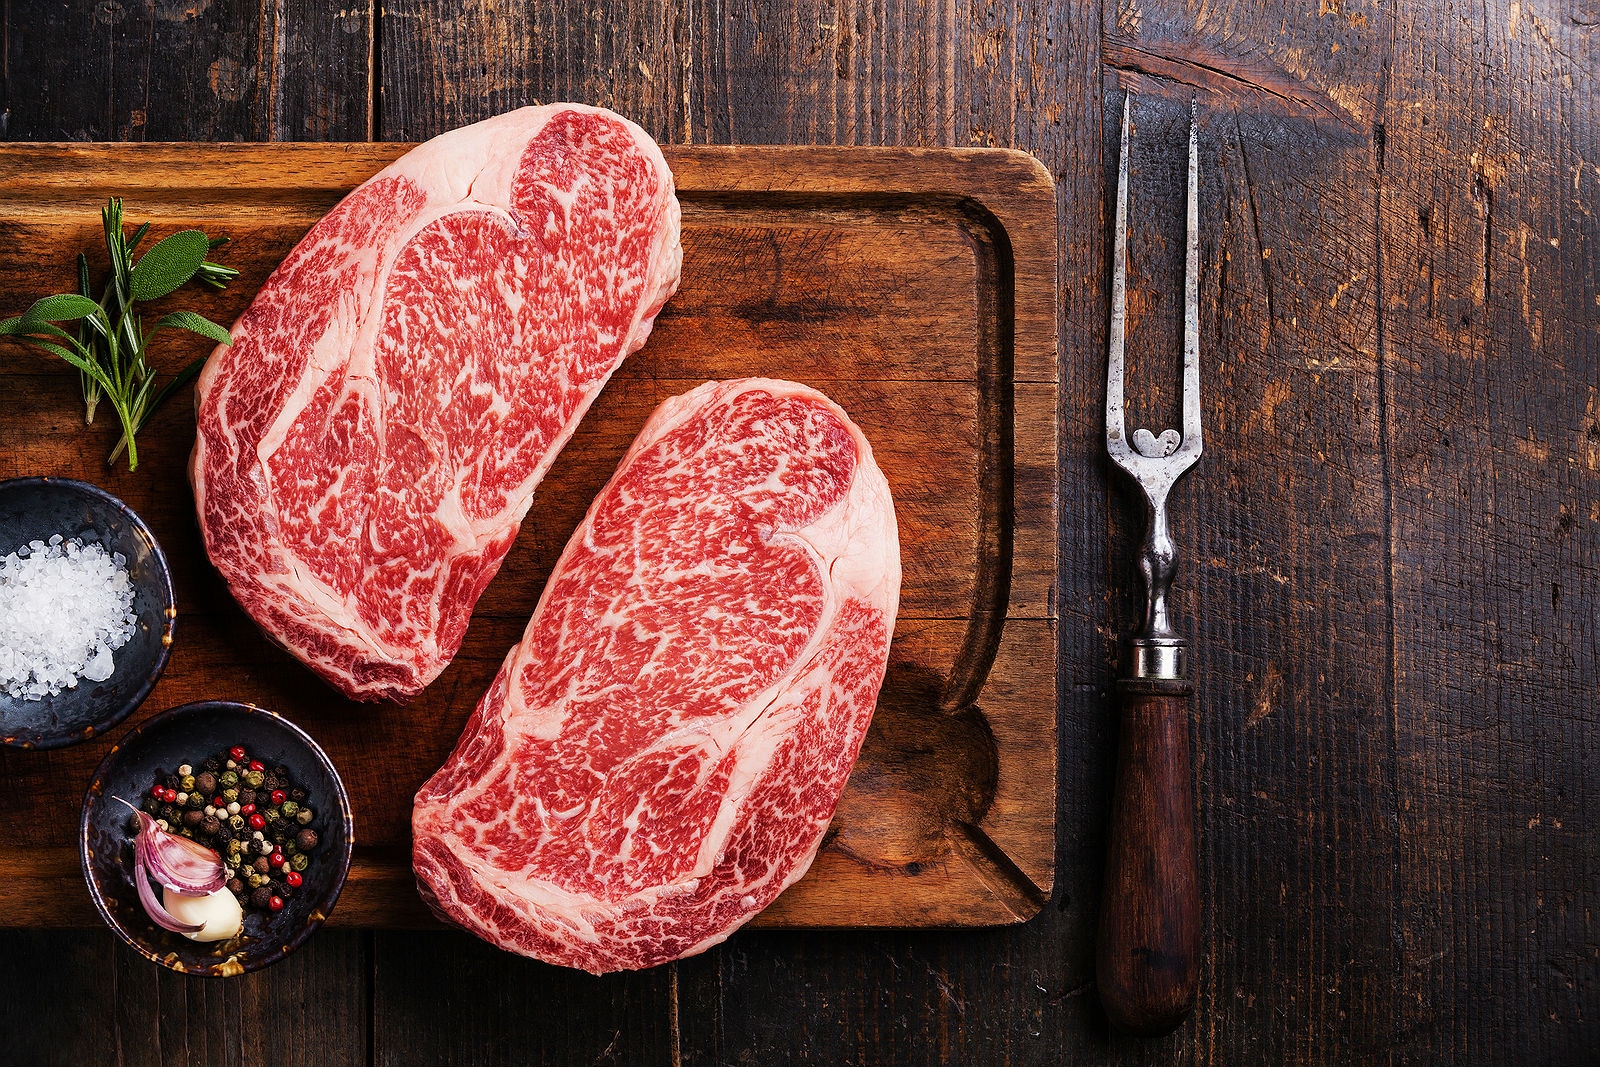 Όλα όσα πρέπει να γνωρίζετε για να επιλέξετε το σωστό κομμάτι κρέας – Μυστικά συντήρησης και υγιεινής (φώτο)